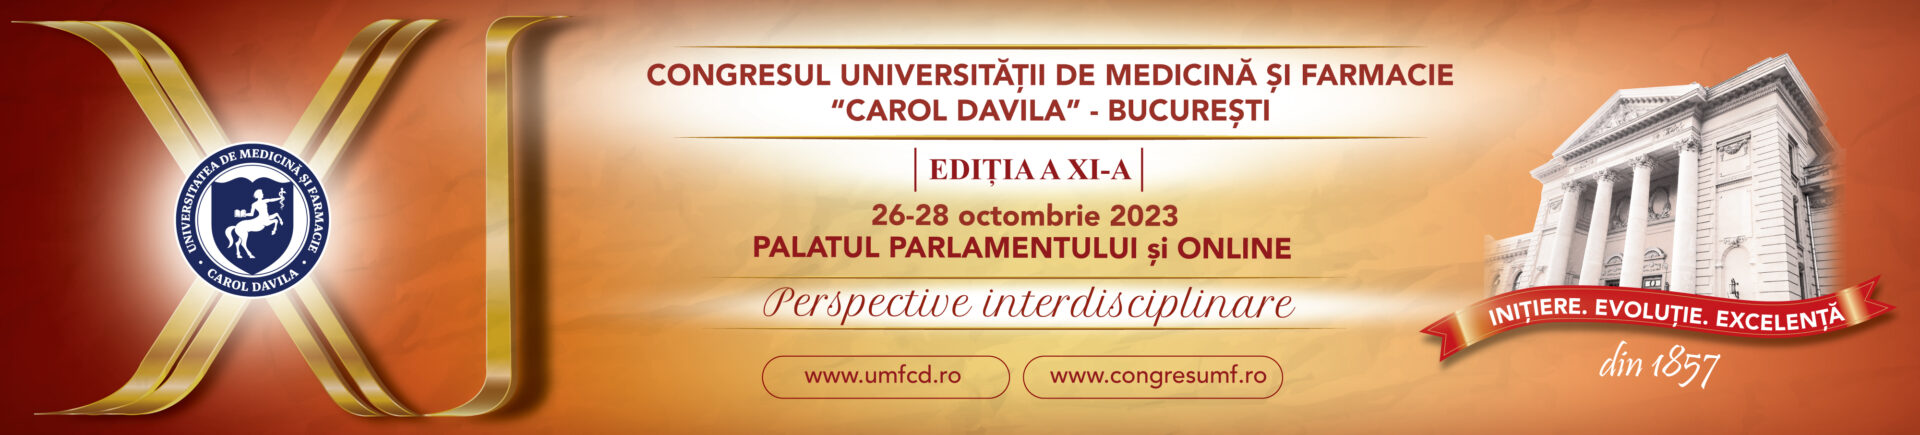 Congresul Universității de Medicină și Farmacie „Carol Davila” are loc în perioada 26-28 octombrie 